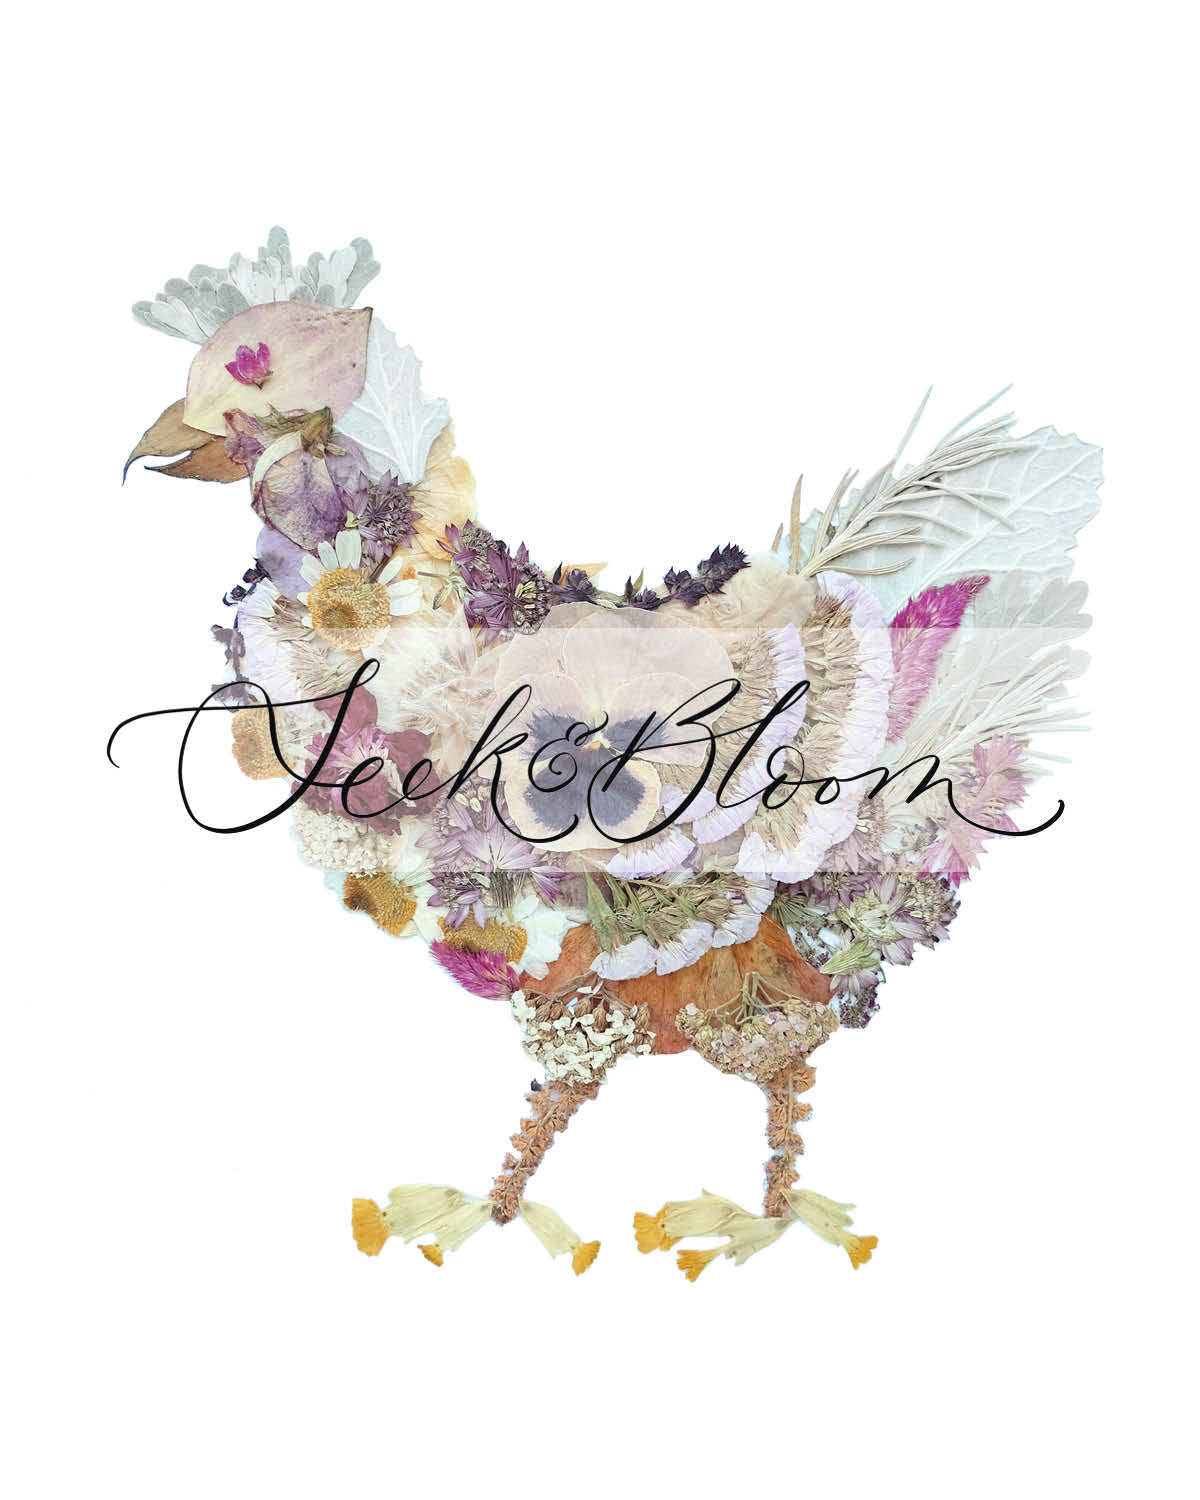 Chicken, Pressed Flower 8x10 Art Print